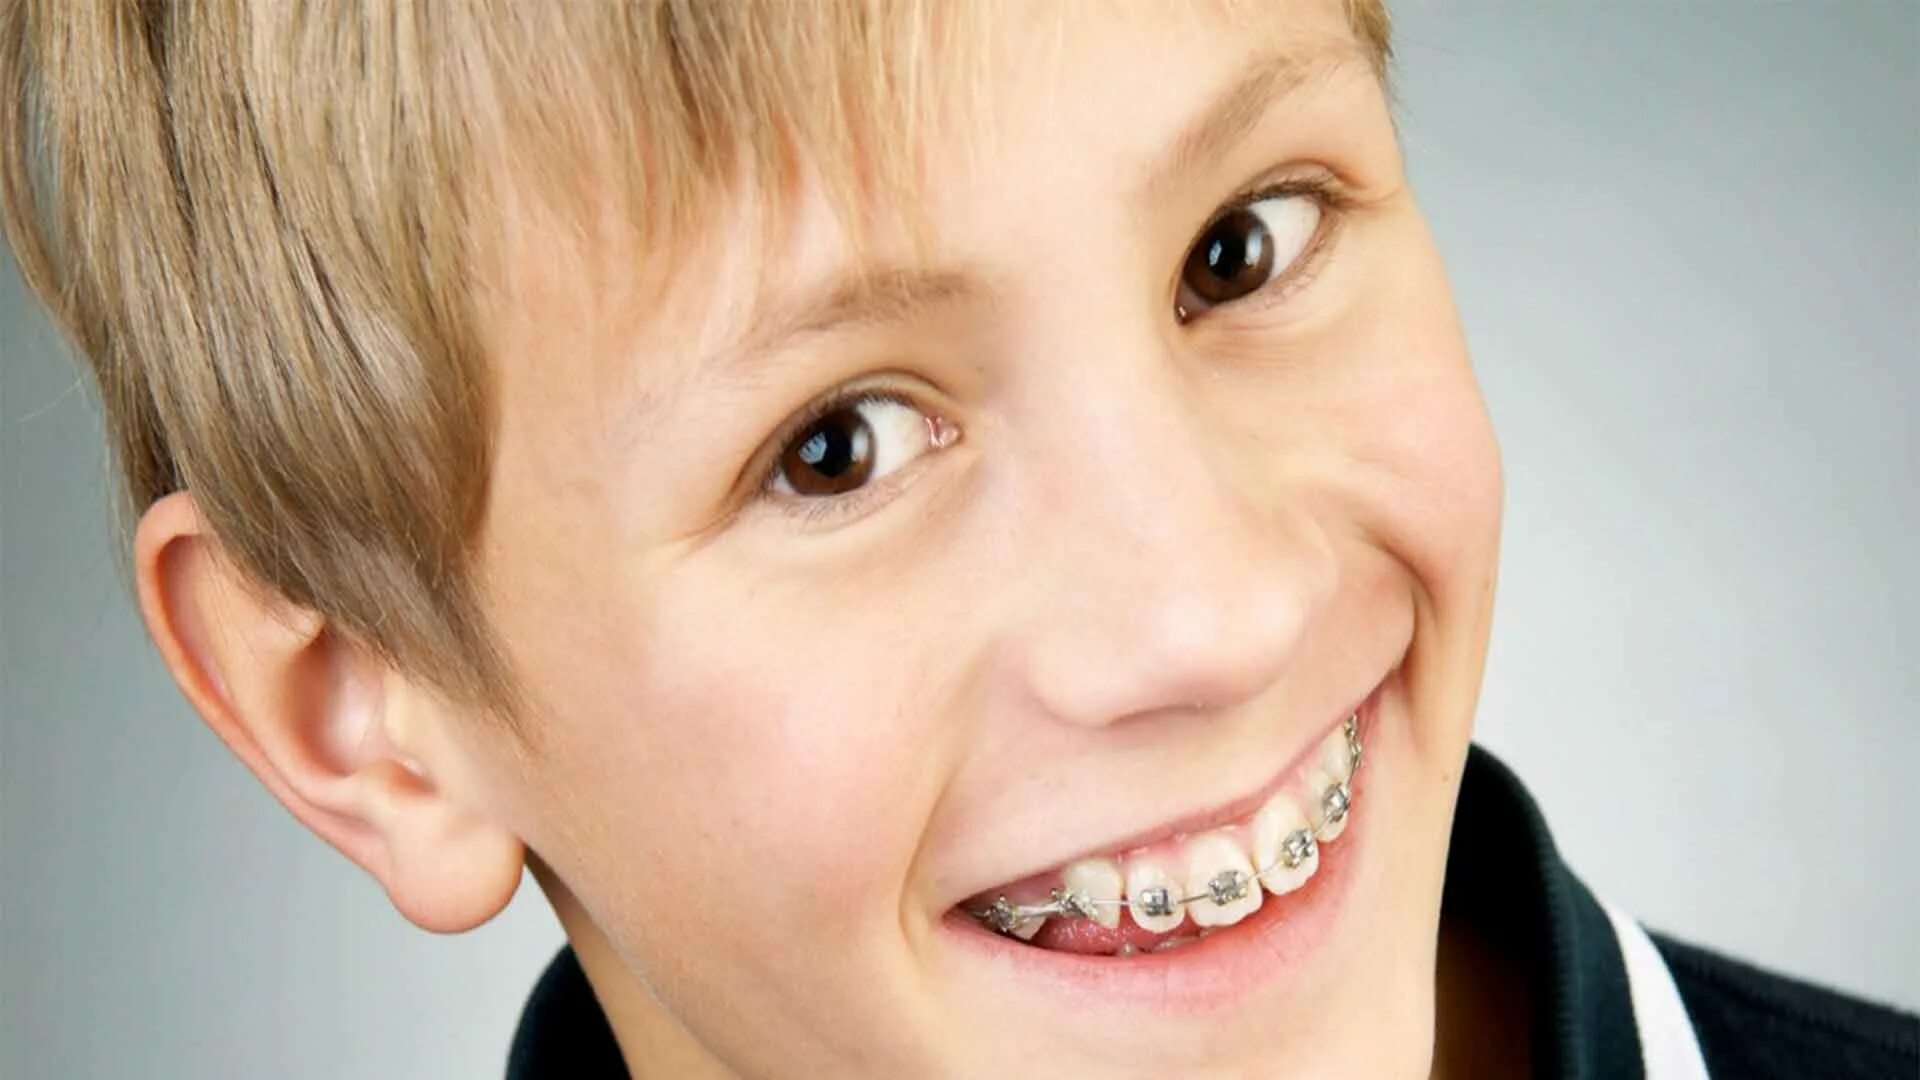 Посеребренные детские зубы. Брекеты для детей 11 лет мальчику. Со скольки лет брекеты можно ставить ребенку